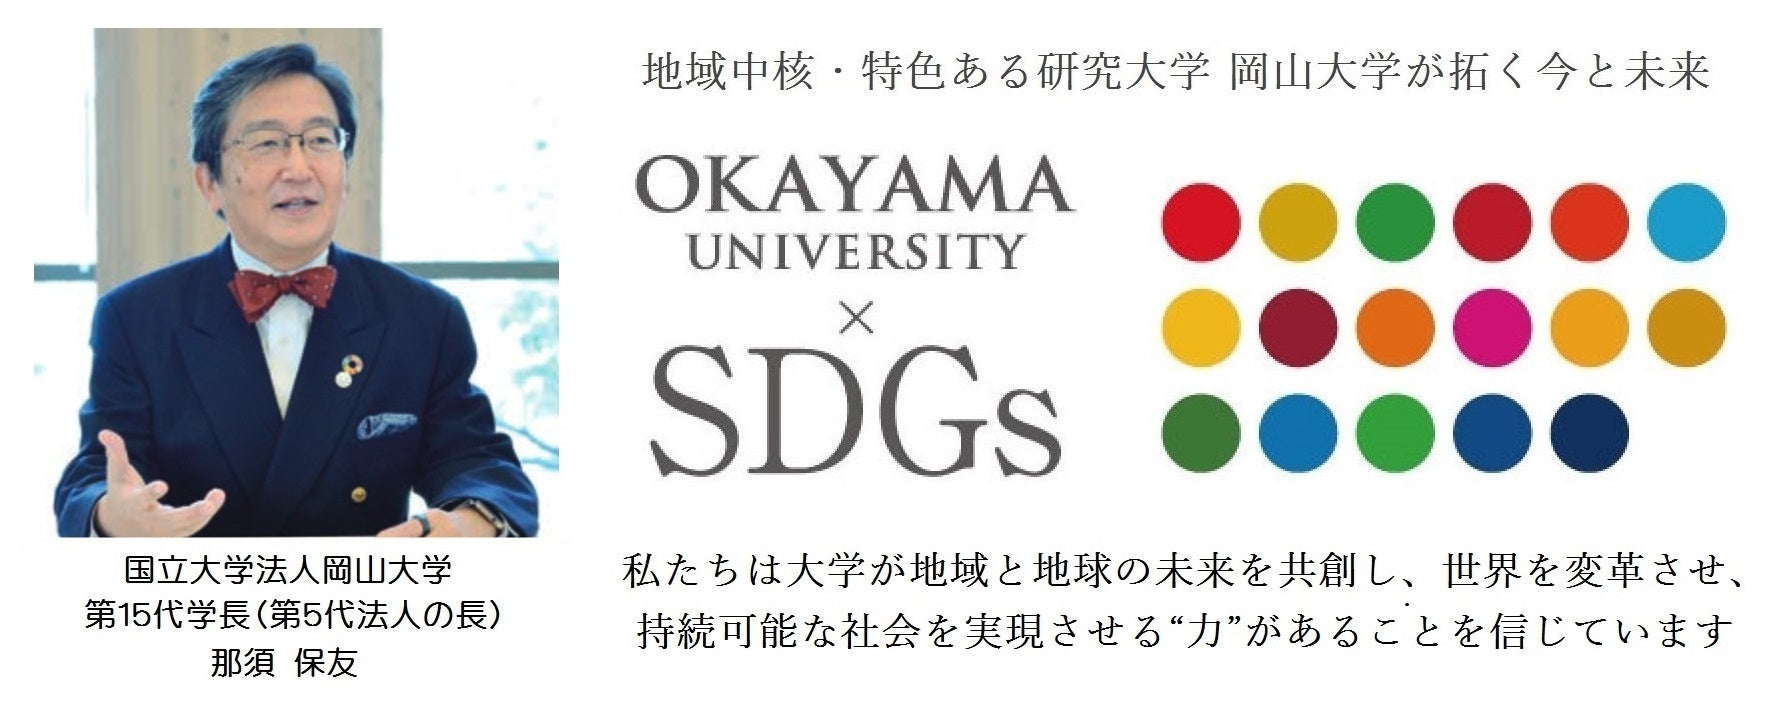 【岡山大学】グローバル人材育成特別コースの卒業生を迎えて、特別講義と交流イベントを開催